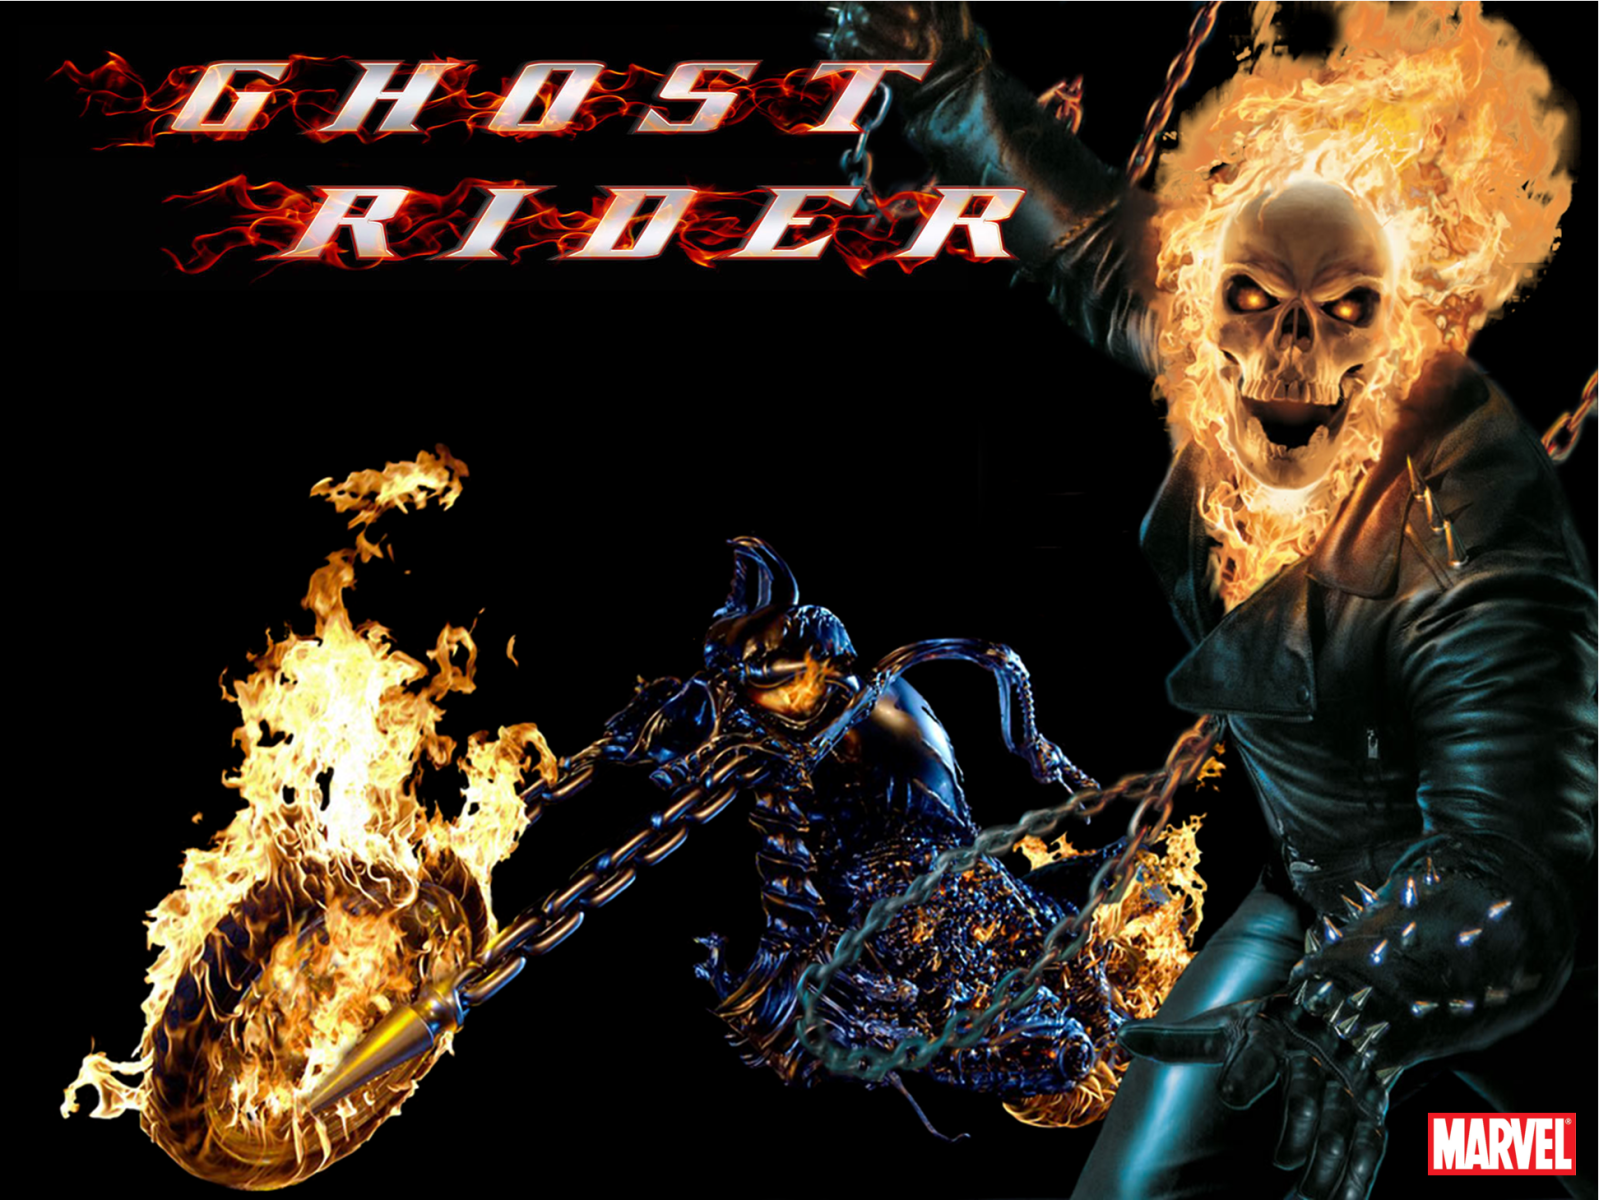 http://1.bp.blogspot.com/-gPytsTqg6LY/T9ZTpm-1EeI/AAAAAAAAAGQ/z0usiqgkmY4/s1600/Ghost_Rider_Wallpaper_by_Megatron_1.png